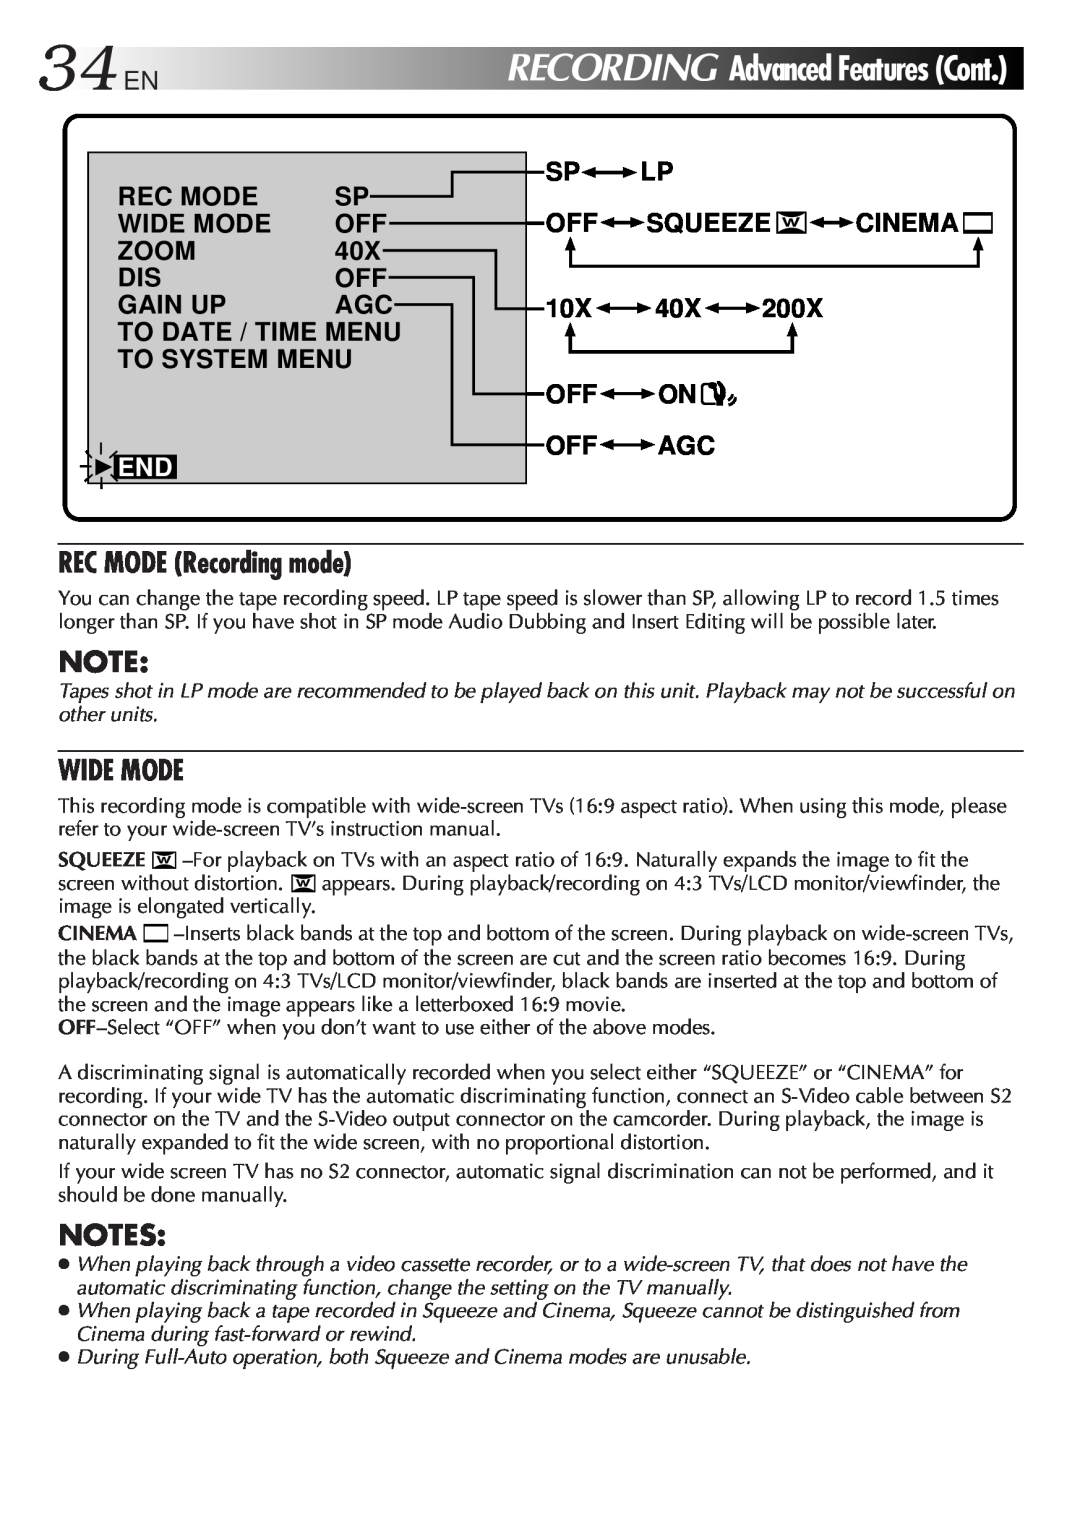 JVC GR-DVL9000 manual 34ENRECORDING, REC MODE Recording mode, Wide Mode, AdvancedFeaturesCont, Notes, 4END 